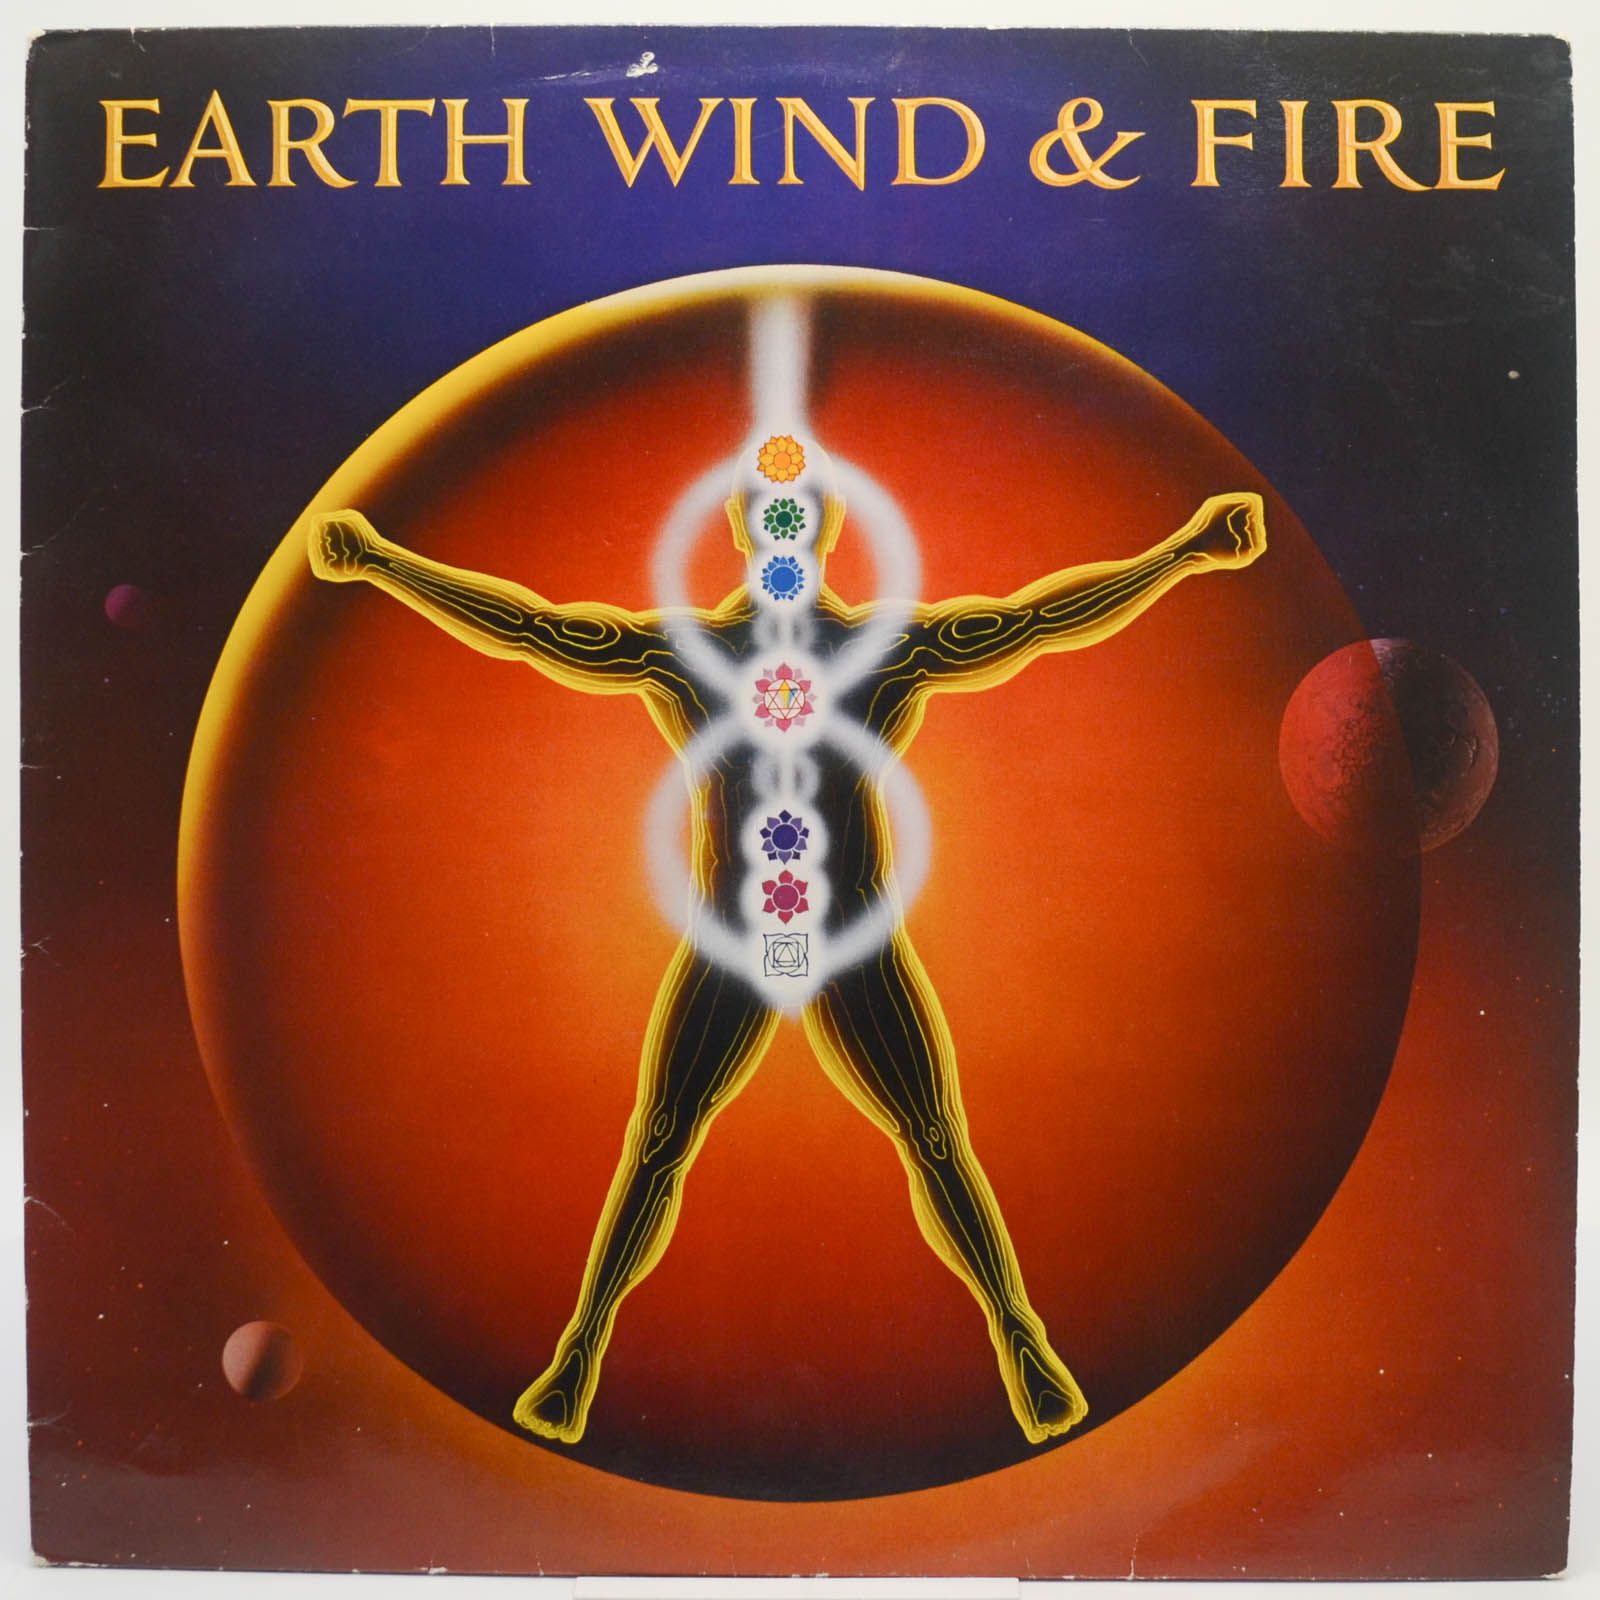 Earth, Wind & Fire — Powerlight, 1983